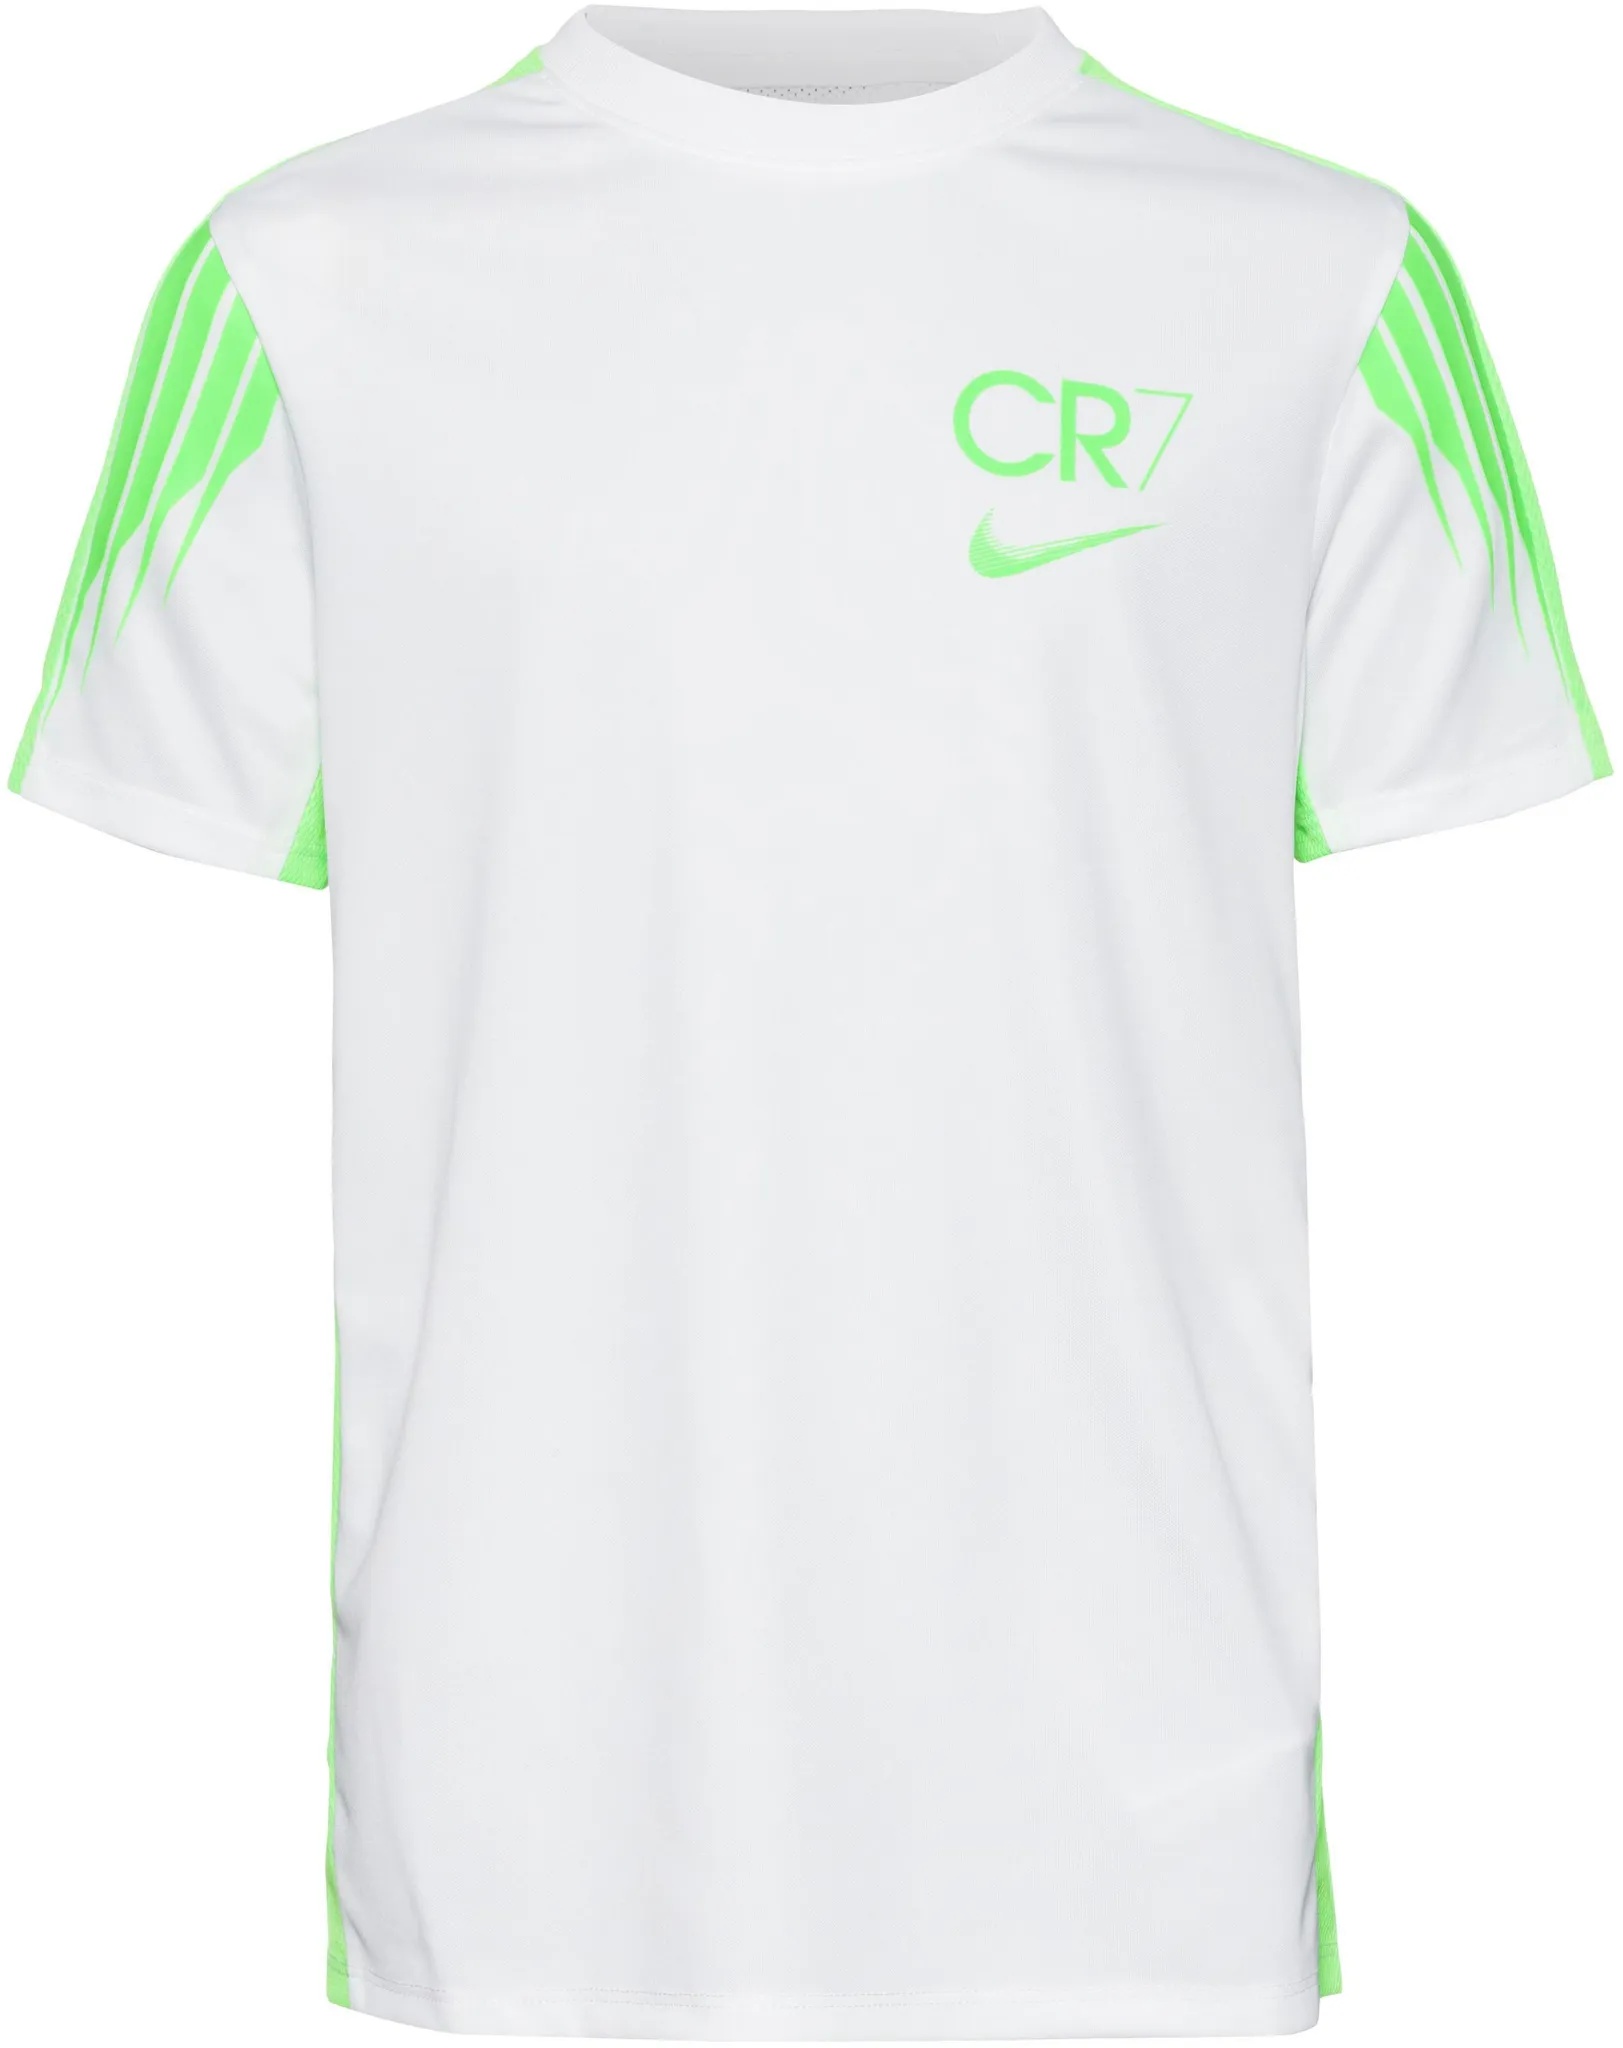 Nike CR7 Funktionsshirt Kinder in white-green strike-green strike, Größe 164 - weiß